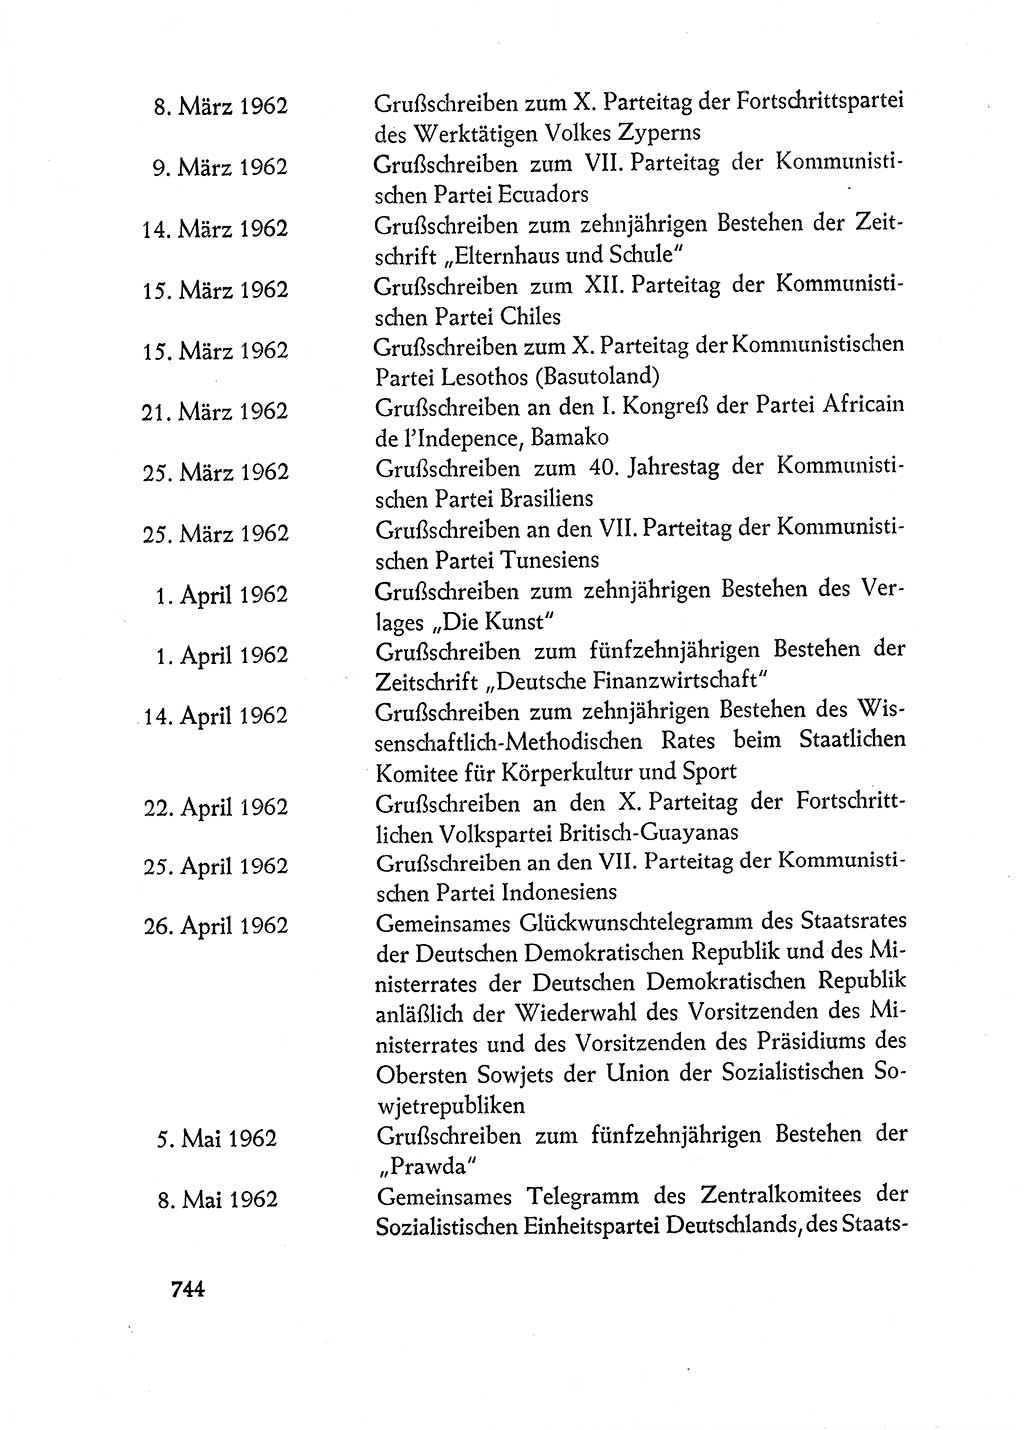 Dokumente der Sozialistischen Einheitspartei Deutschlands (SED) [Deutsche Demokratische Republik (DDR)] 1962-1963, Seite 744 (Dok. SED DDR 1962-1963, S. 744)